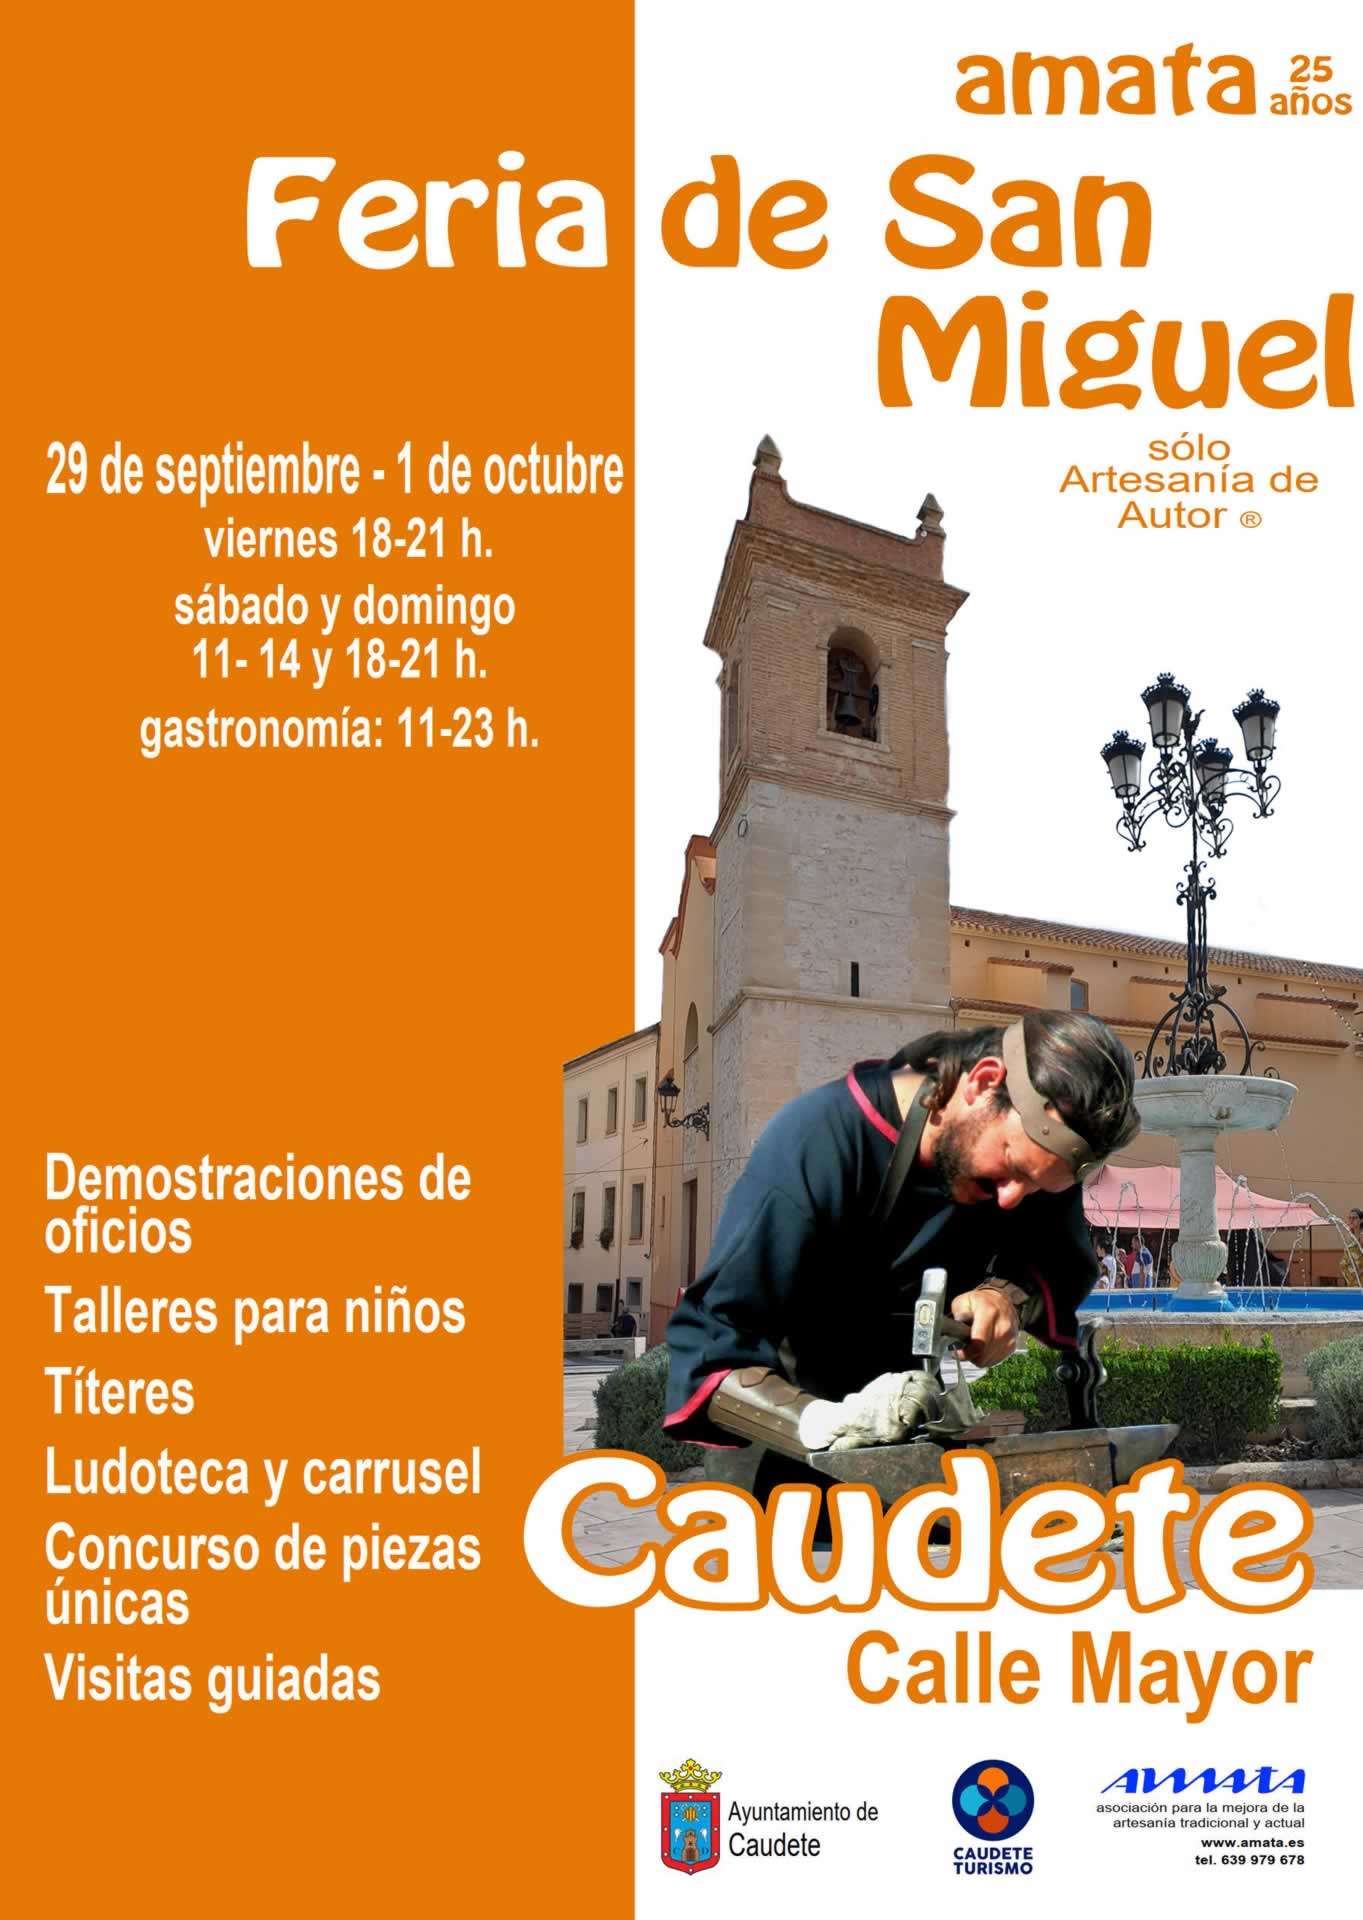 mercadosmedievales.net -  Feria de Artesanía de Autor ® 2023 en Caudete , Albacete 29 de Septiembre al 01 de Octubre